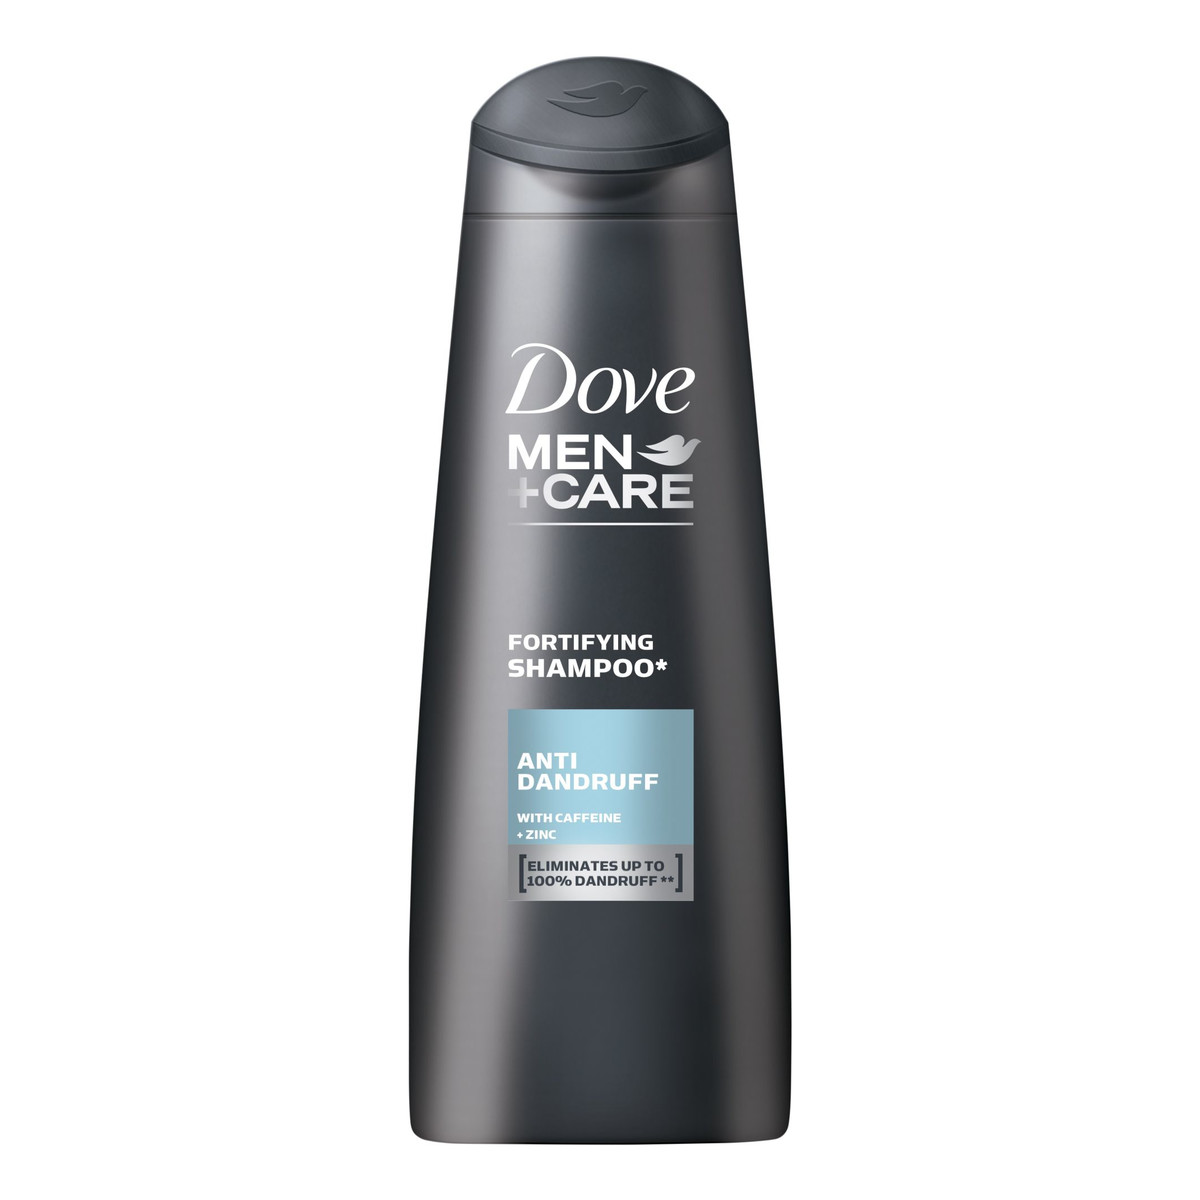 Dove Men+Care Fortifying szampon do włosów przeciwłupieżowy 250ml